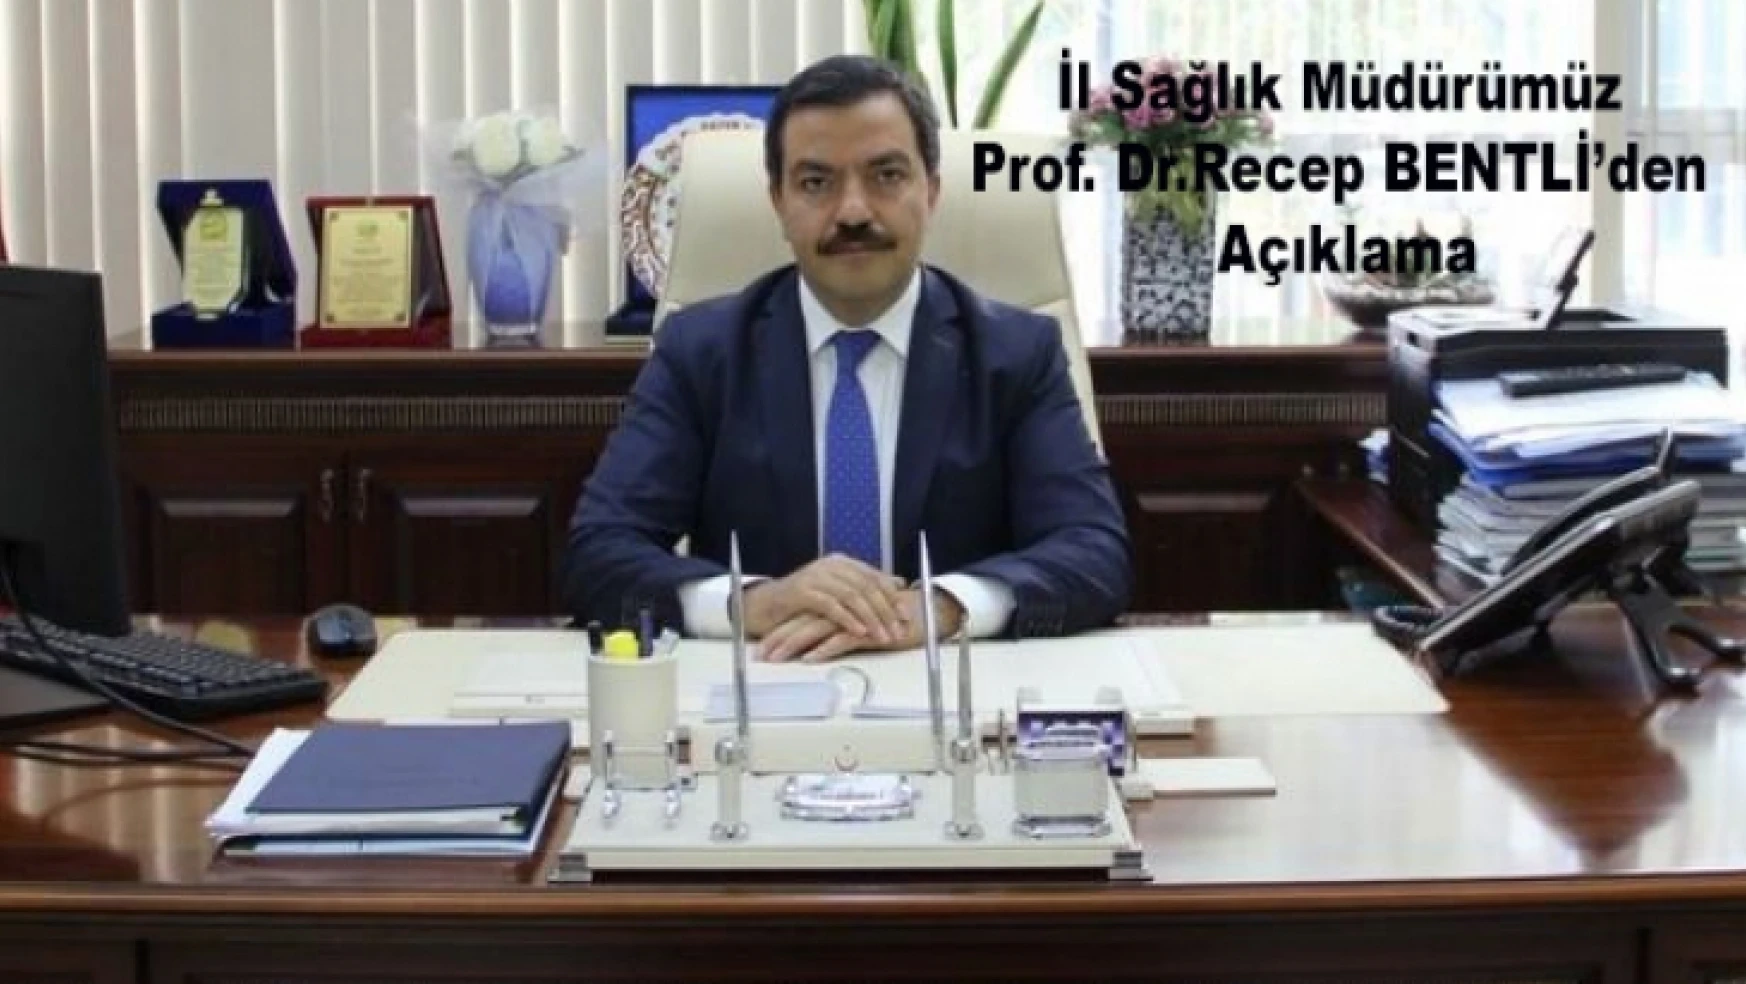 İl Sağlık Müdürü Prof. Dr. Recep BENTLİ'den Açıklama